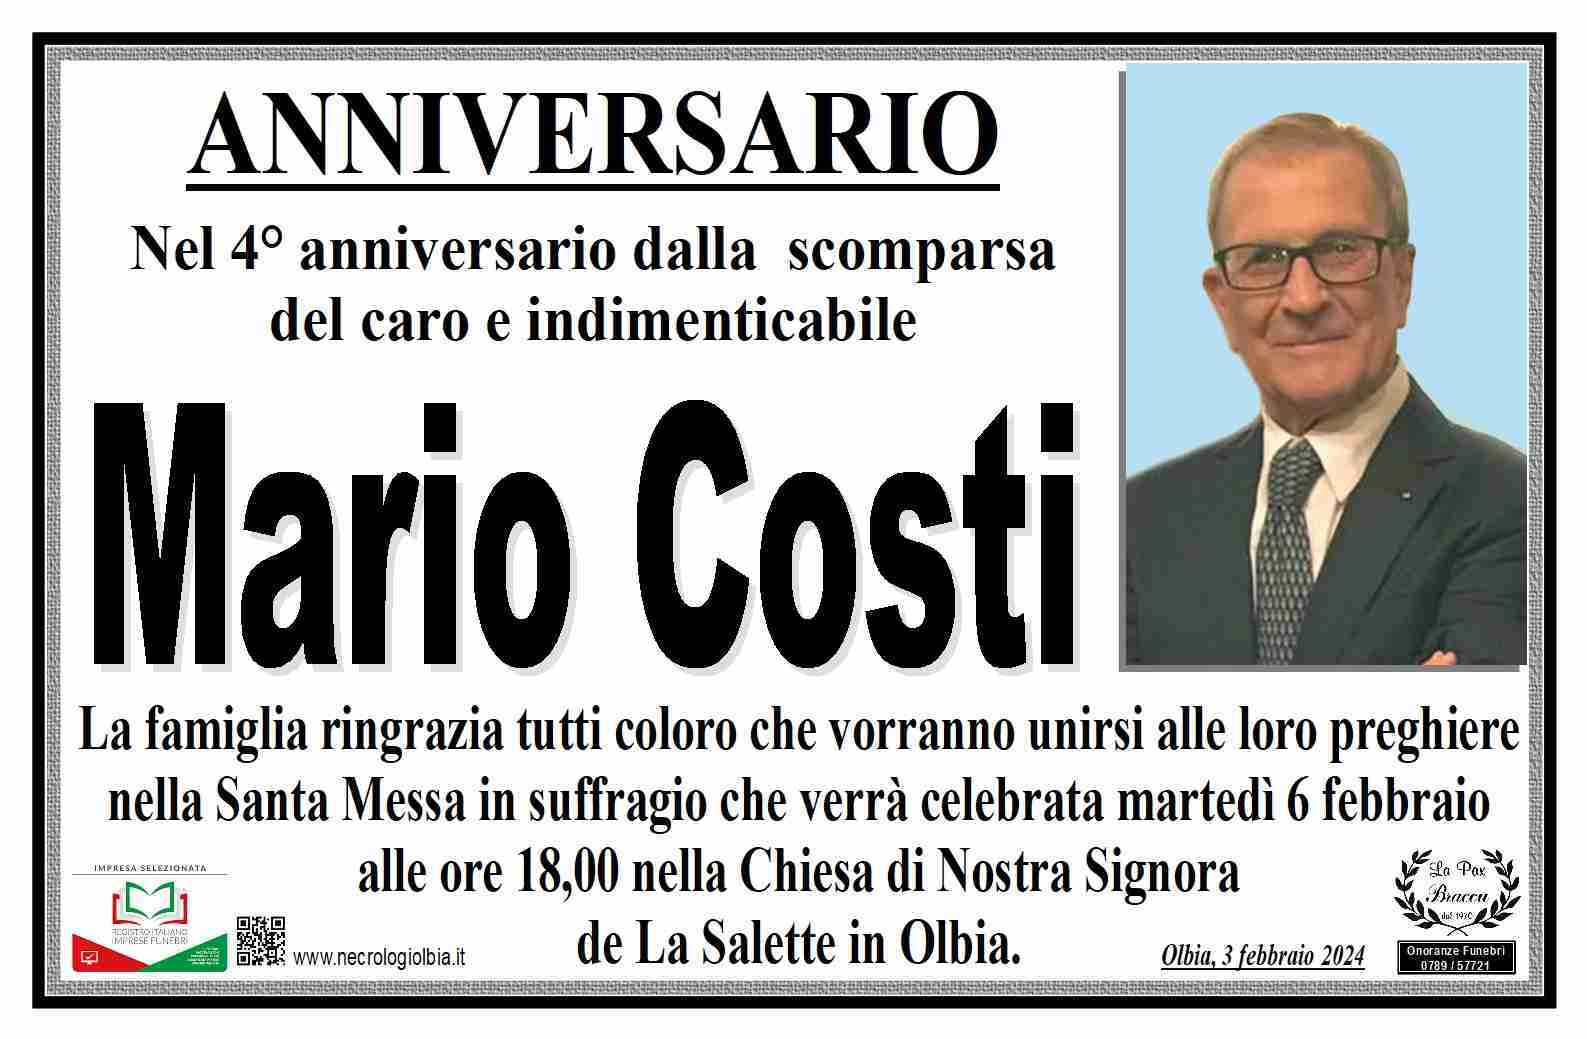 Mario Costi